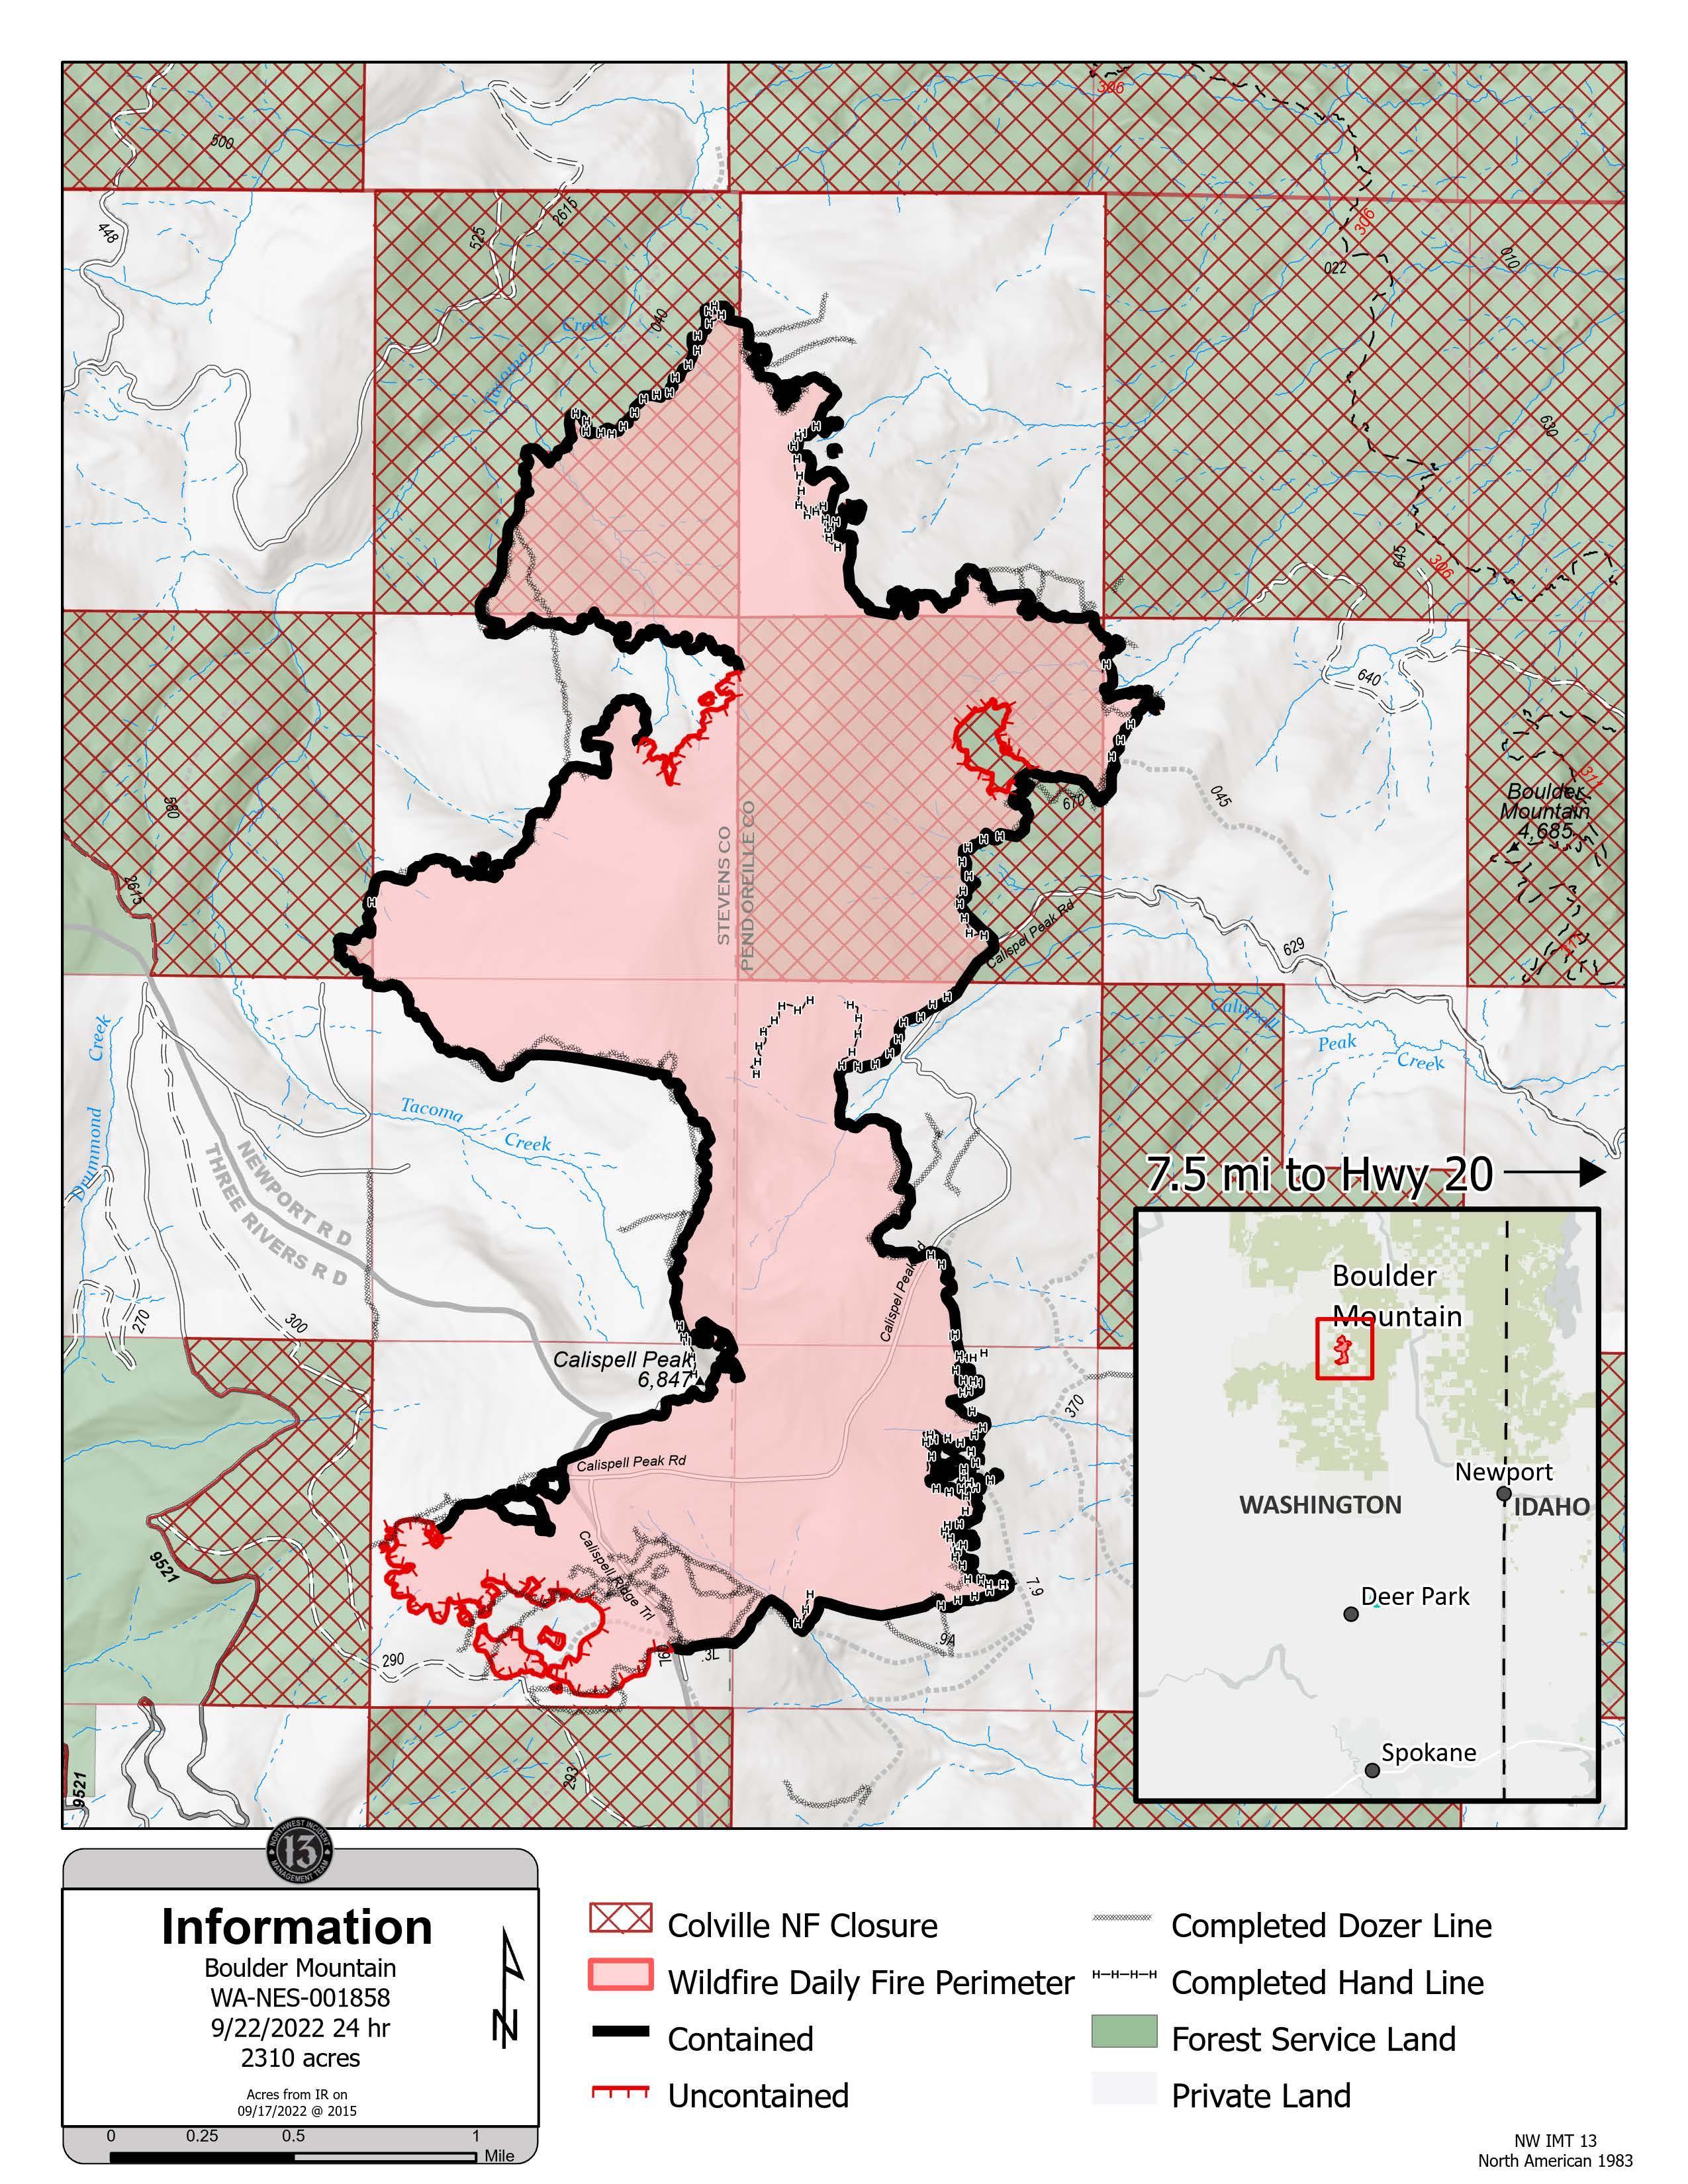 Boulder Mountain Fire map for Thursday, Sept. 22